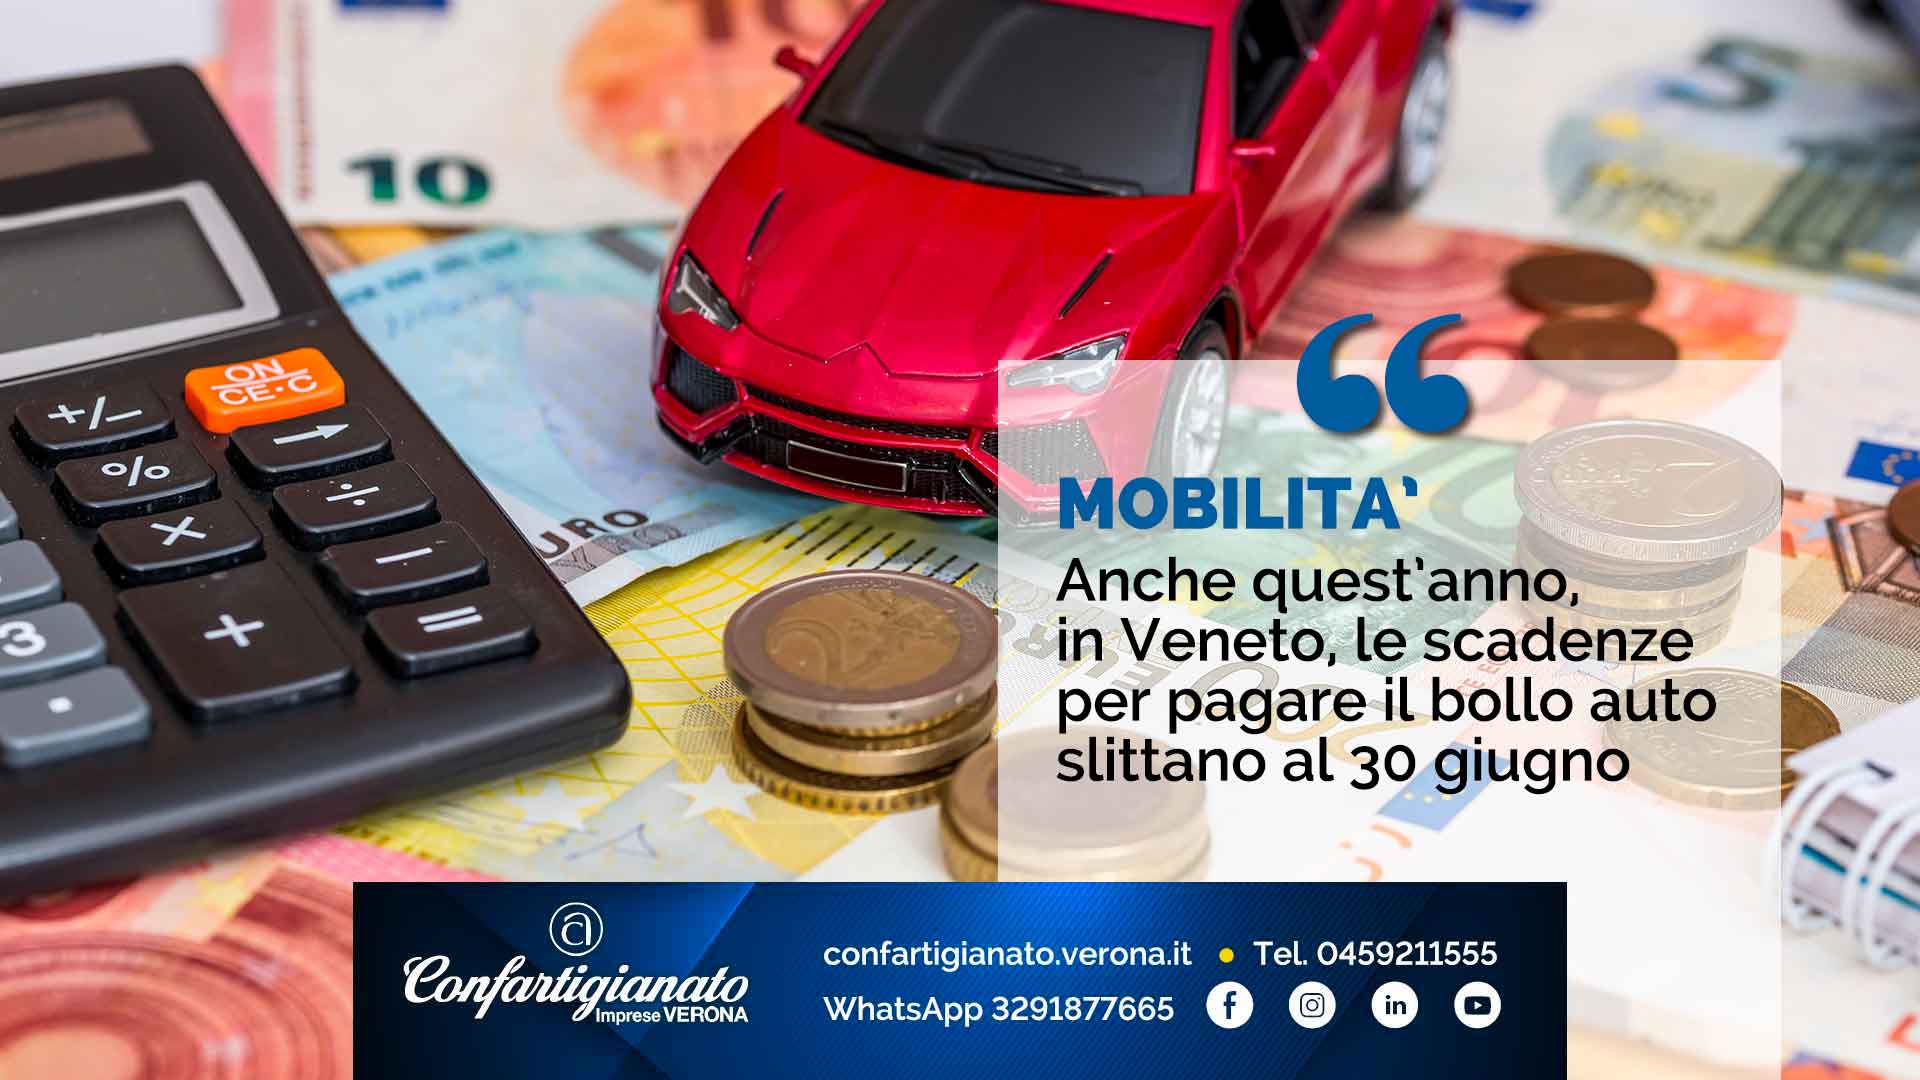 MOBILITA' – Anche quest’anno, in Veneto, le scadenze per pagare il bollo auto slittano al 30 giugno 2021